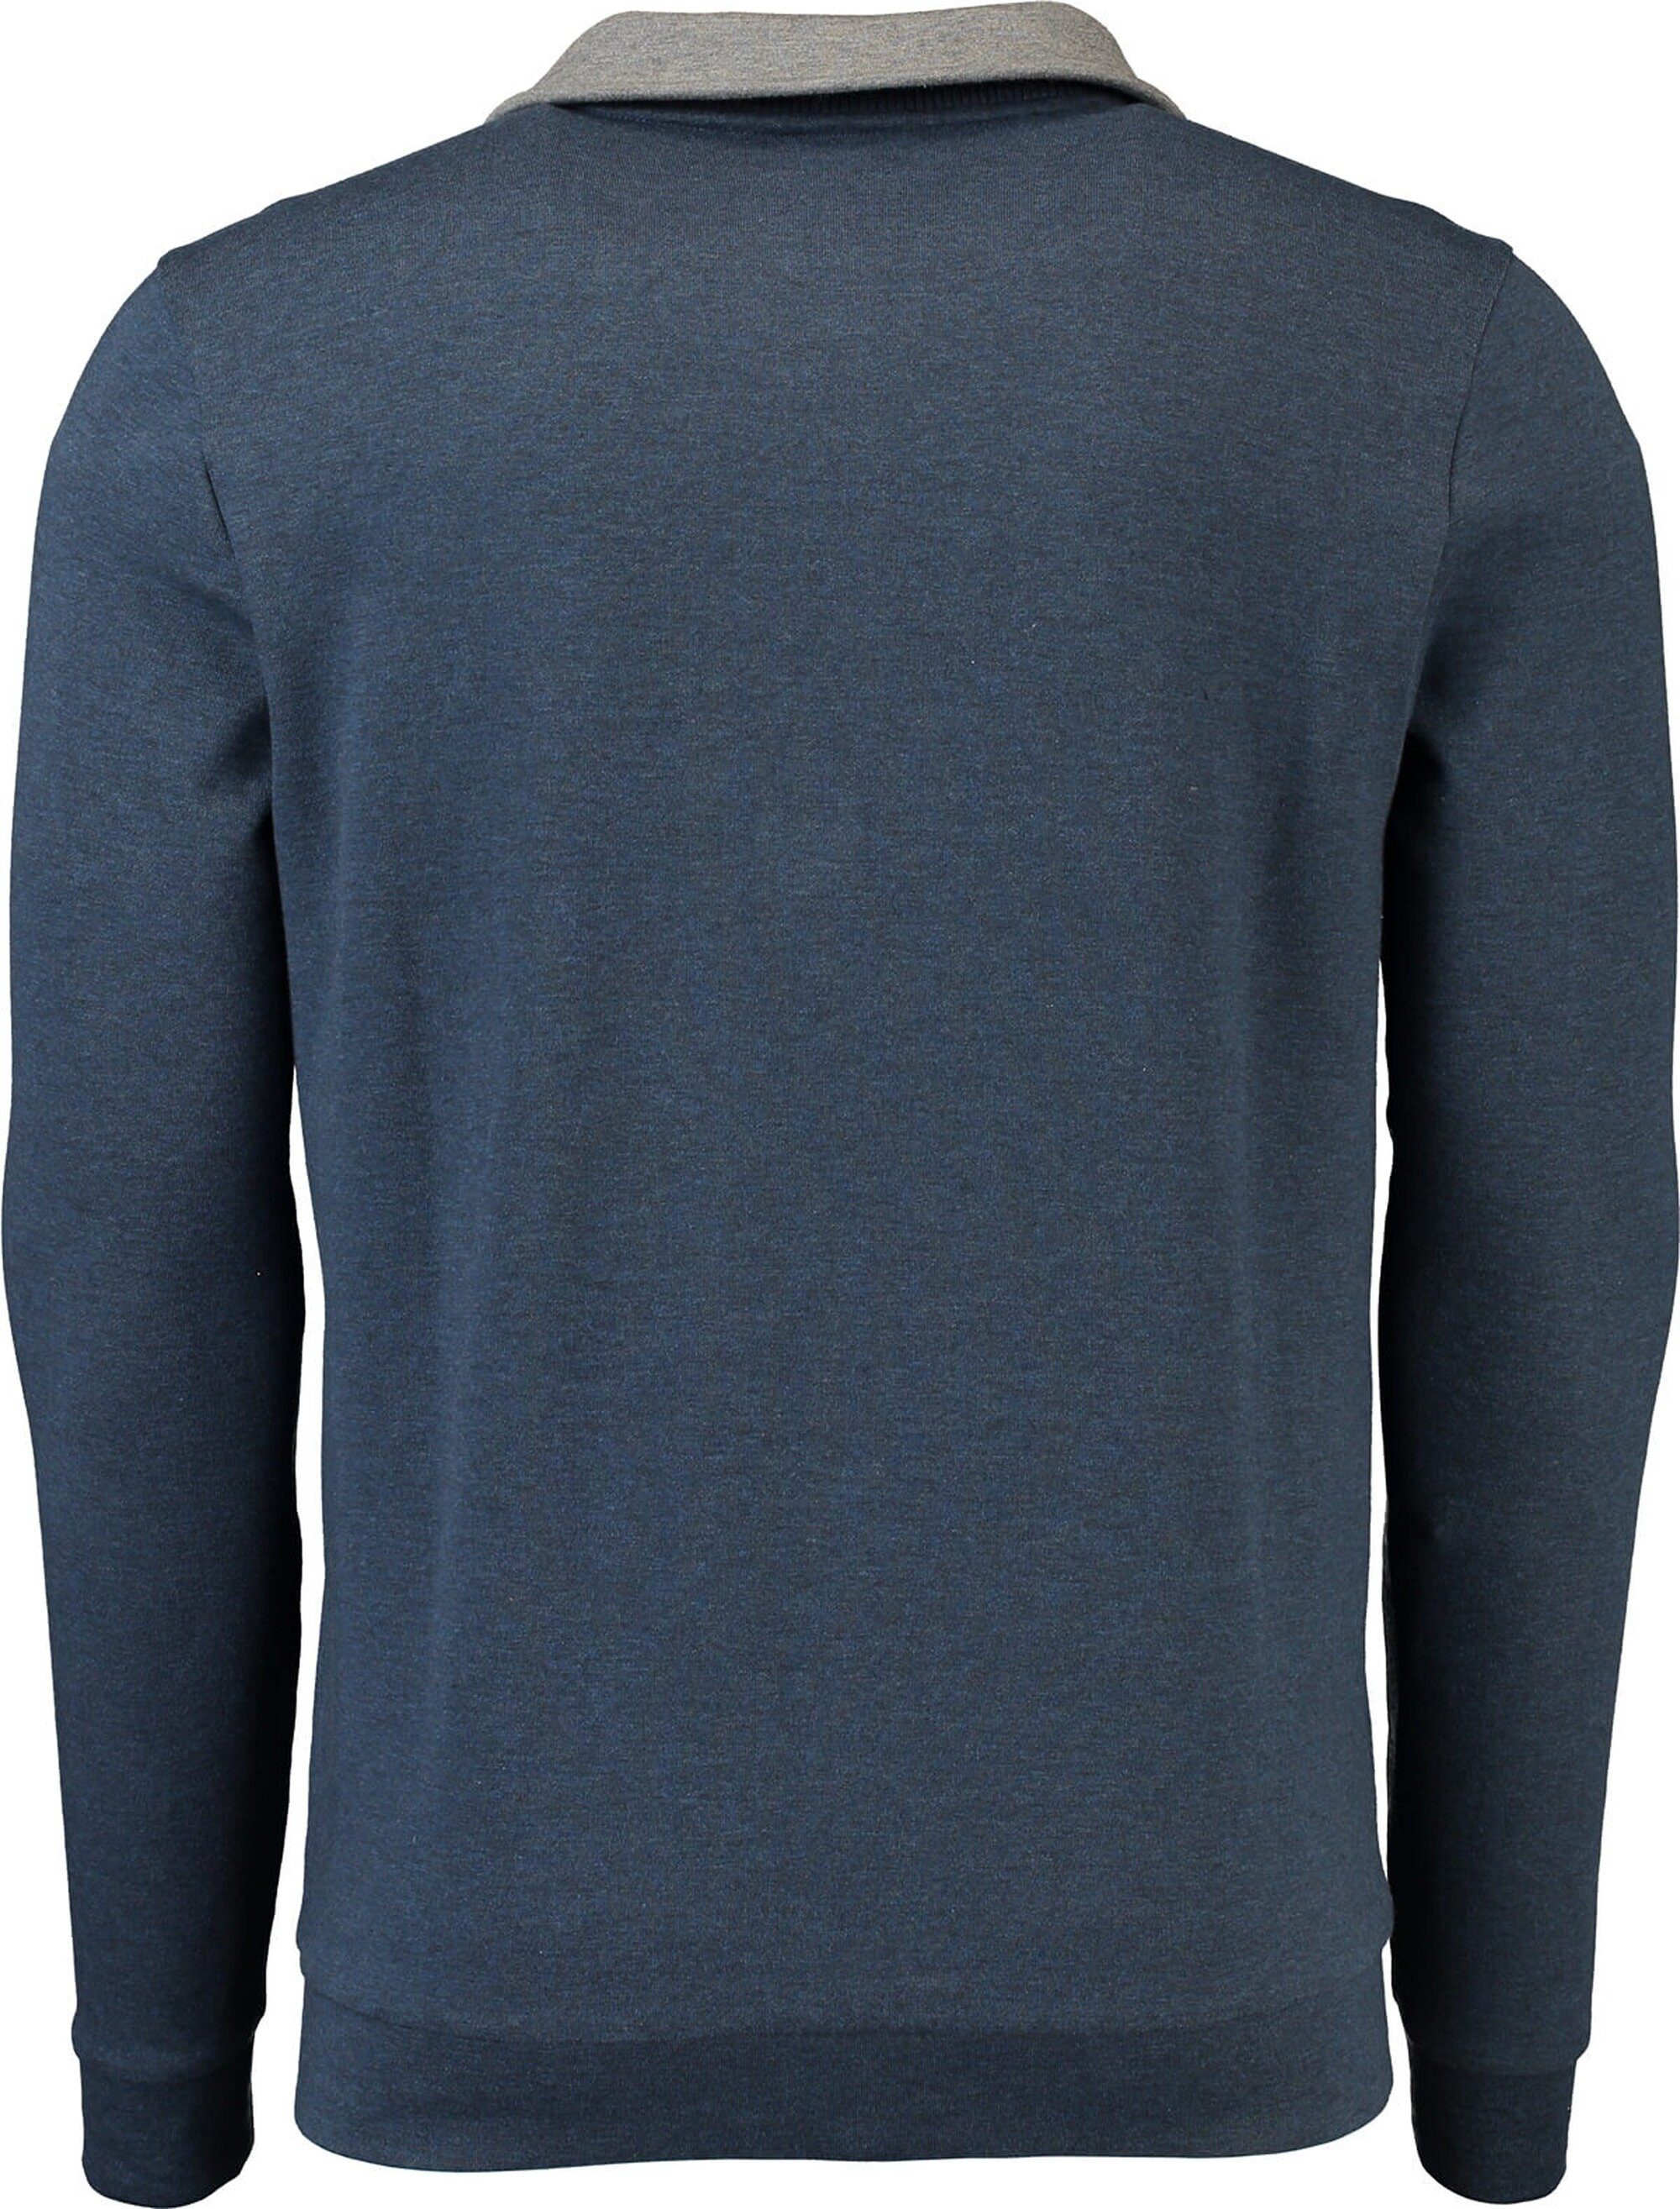 Herren Pullover Pierre Cardin Sweatshirt PIERRE CARDIN Sweat-Shirt blau